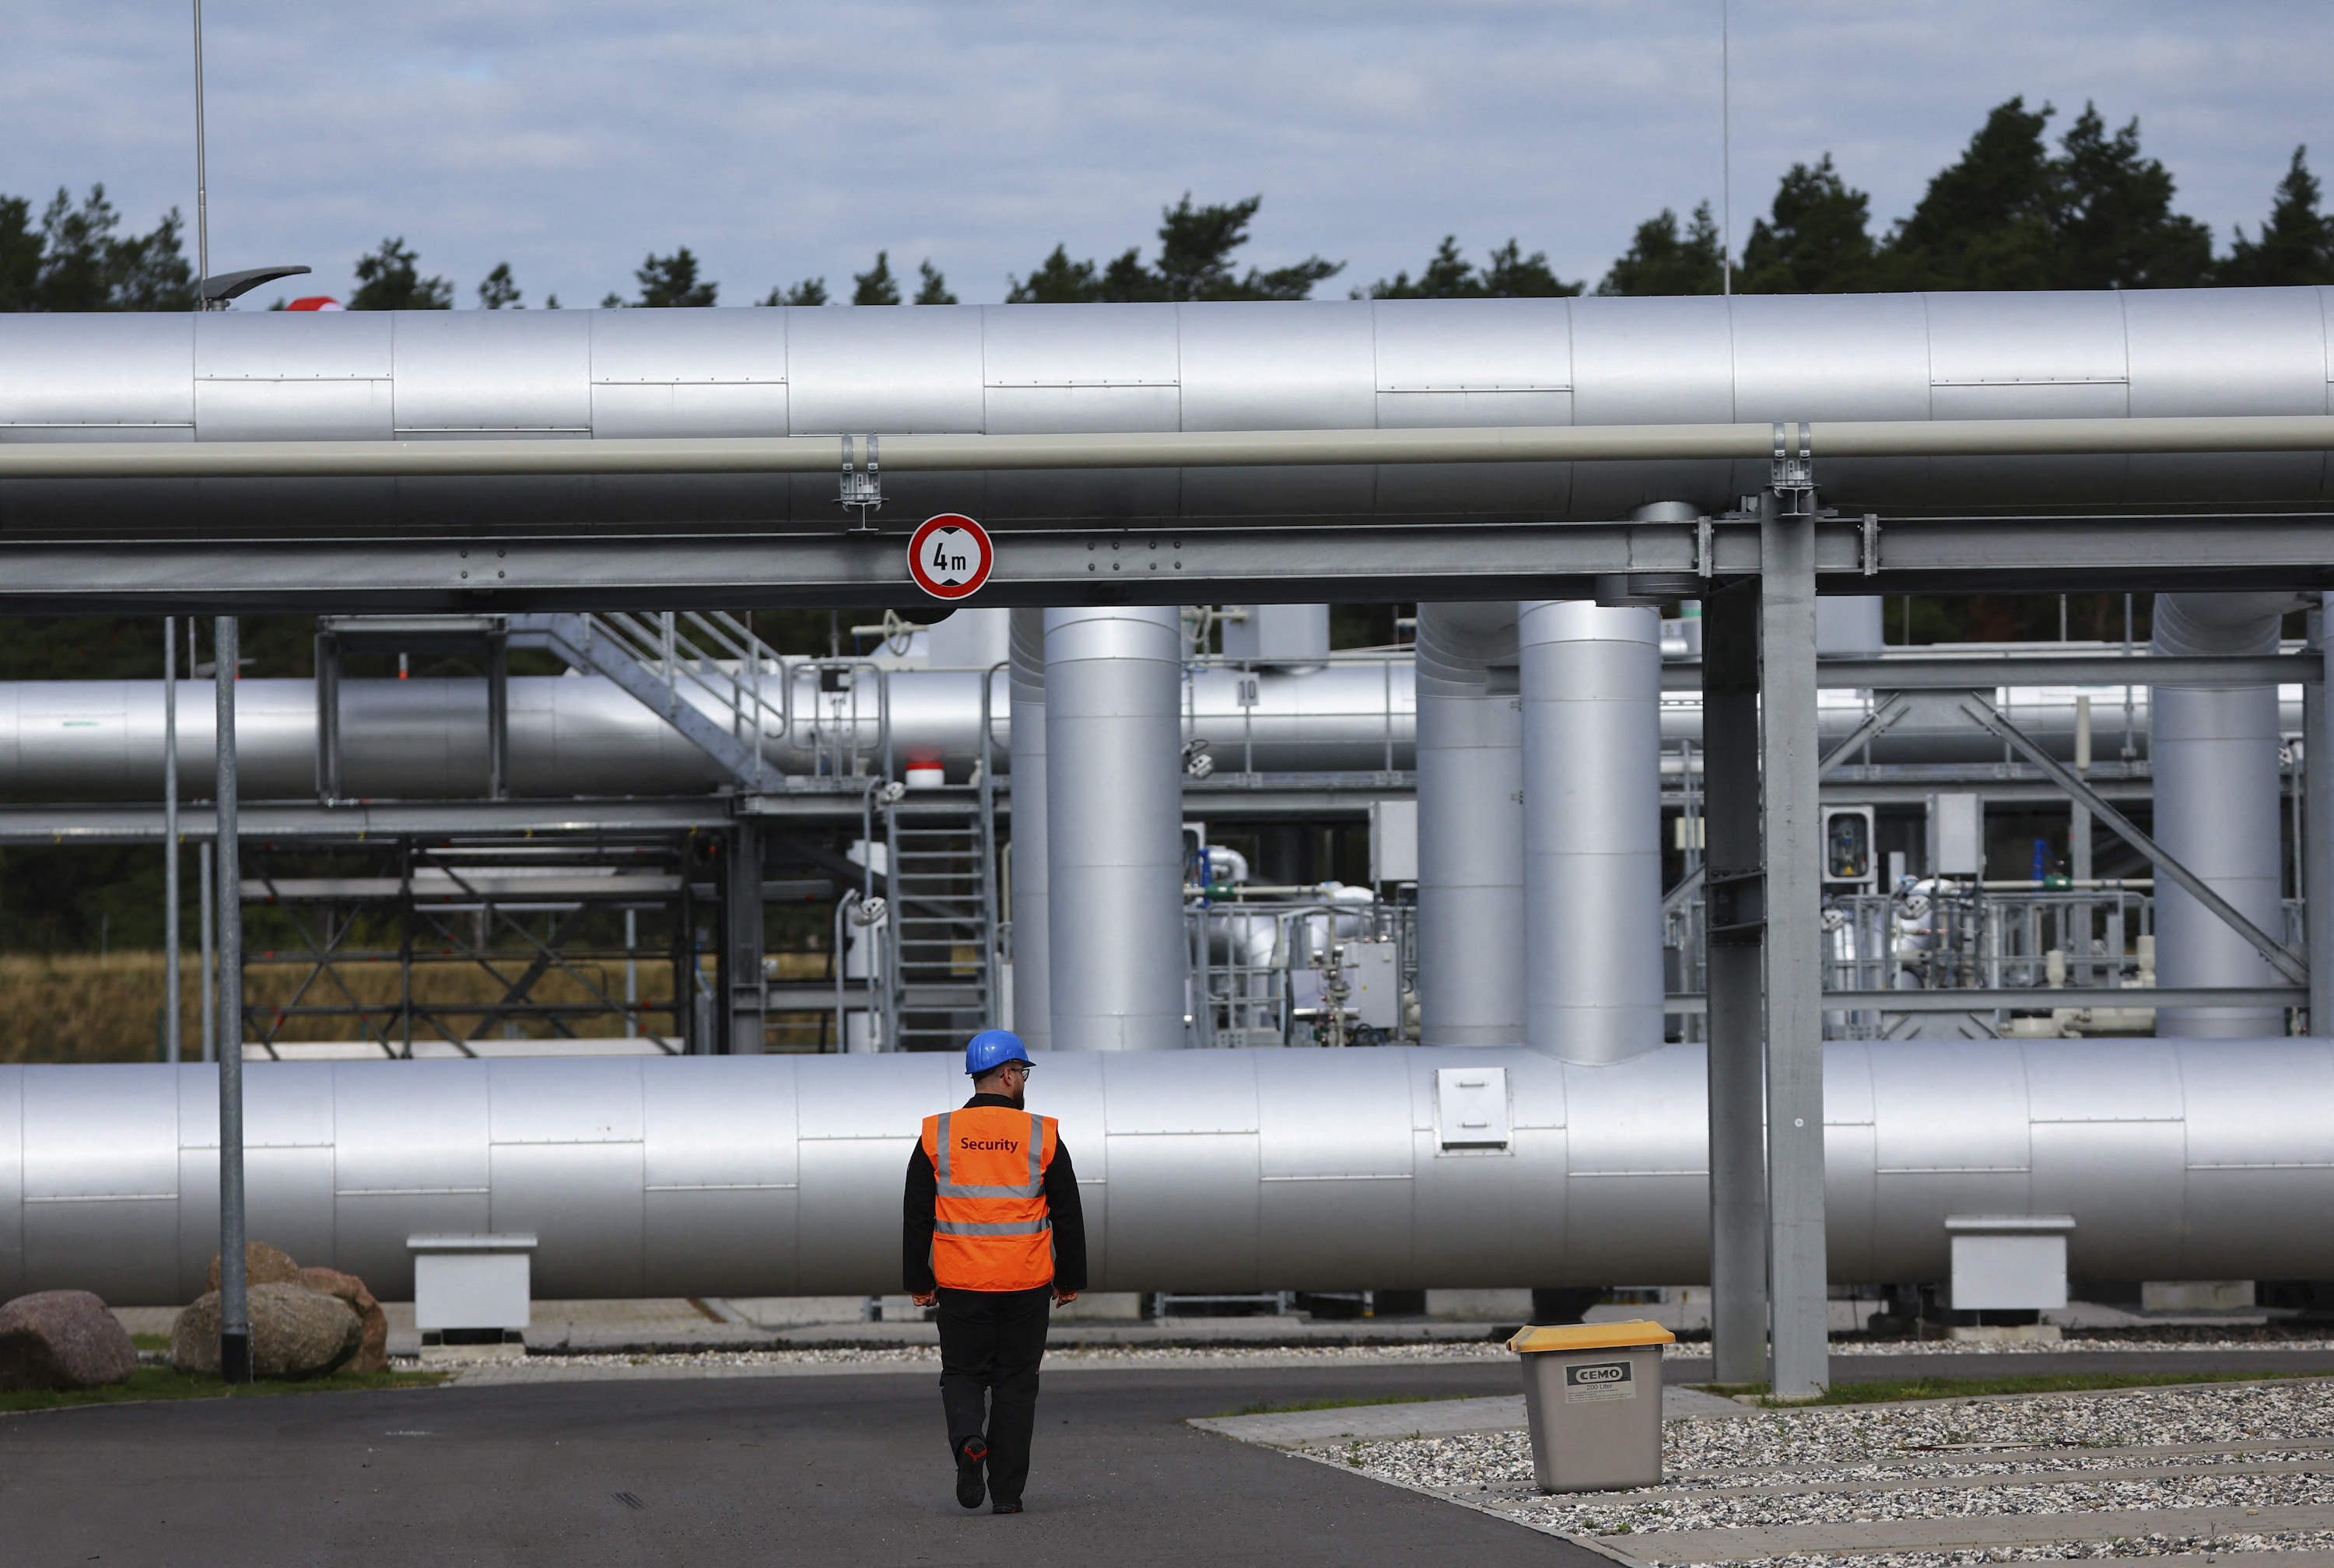 เจ้าหน้าที่รักษาความปลอดภัยเดินทัพหน้าโรงงานขึ้นฝั่งของท่อส่งน้ำ Nord Stream 2 ในเมืองลุบมิน ประเทศเยอรมนี เมื่อวันที่ 19 กันยายน